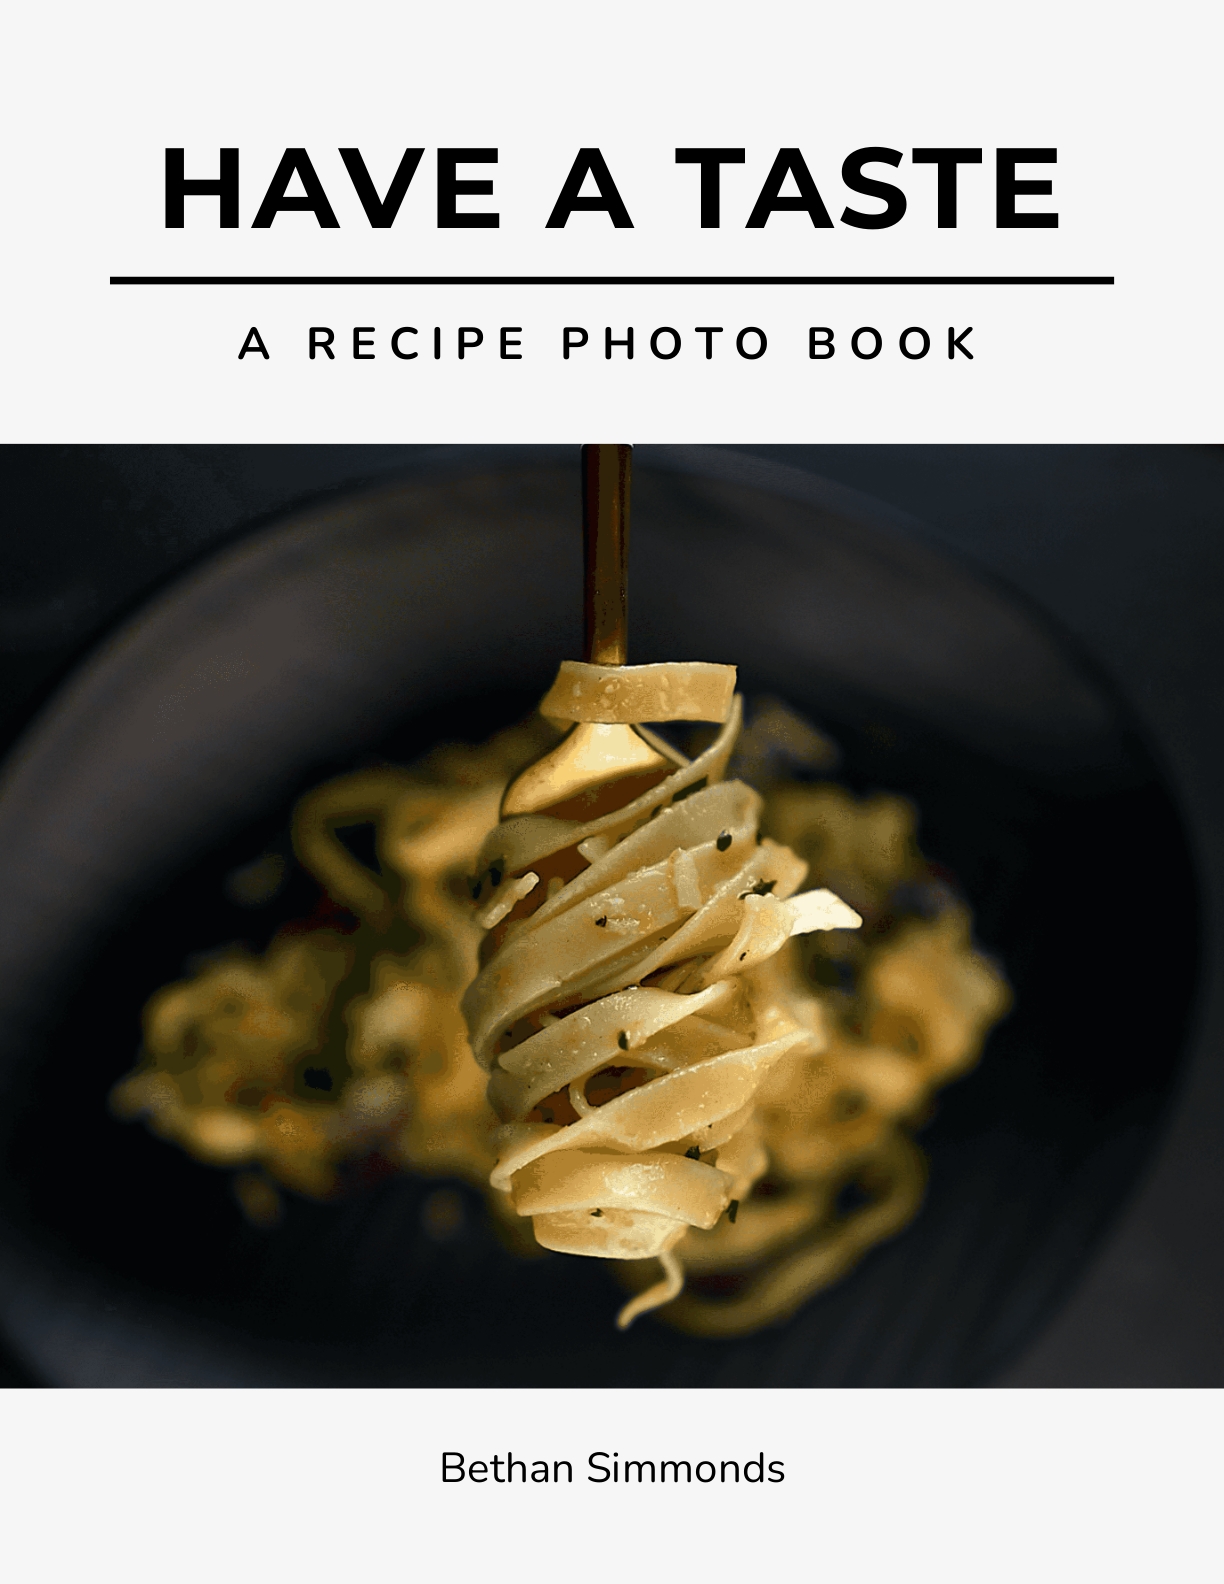 Recipe Photo Book Template